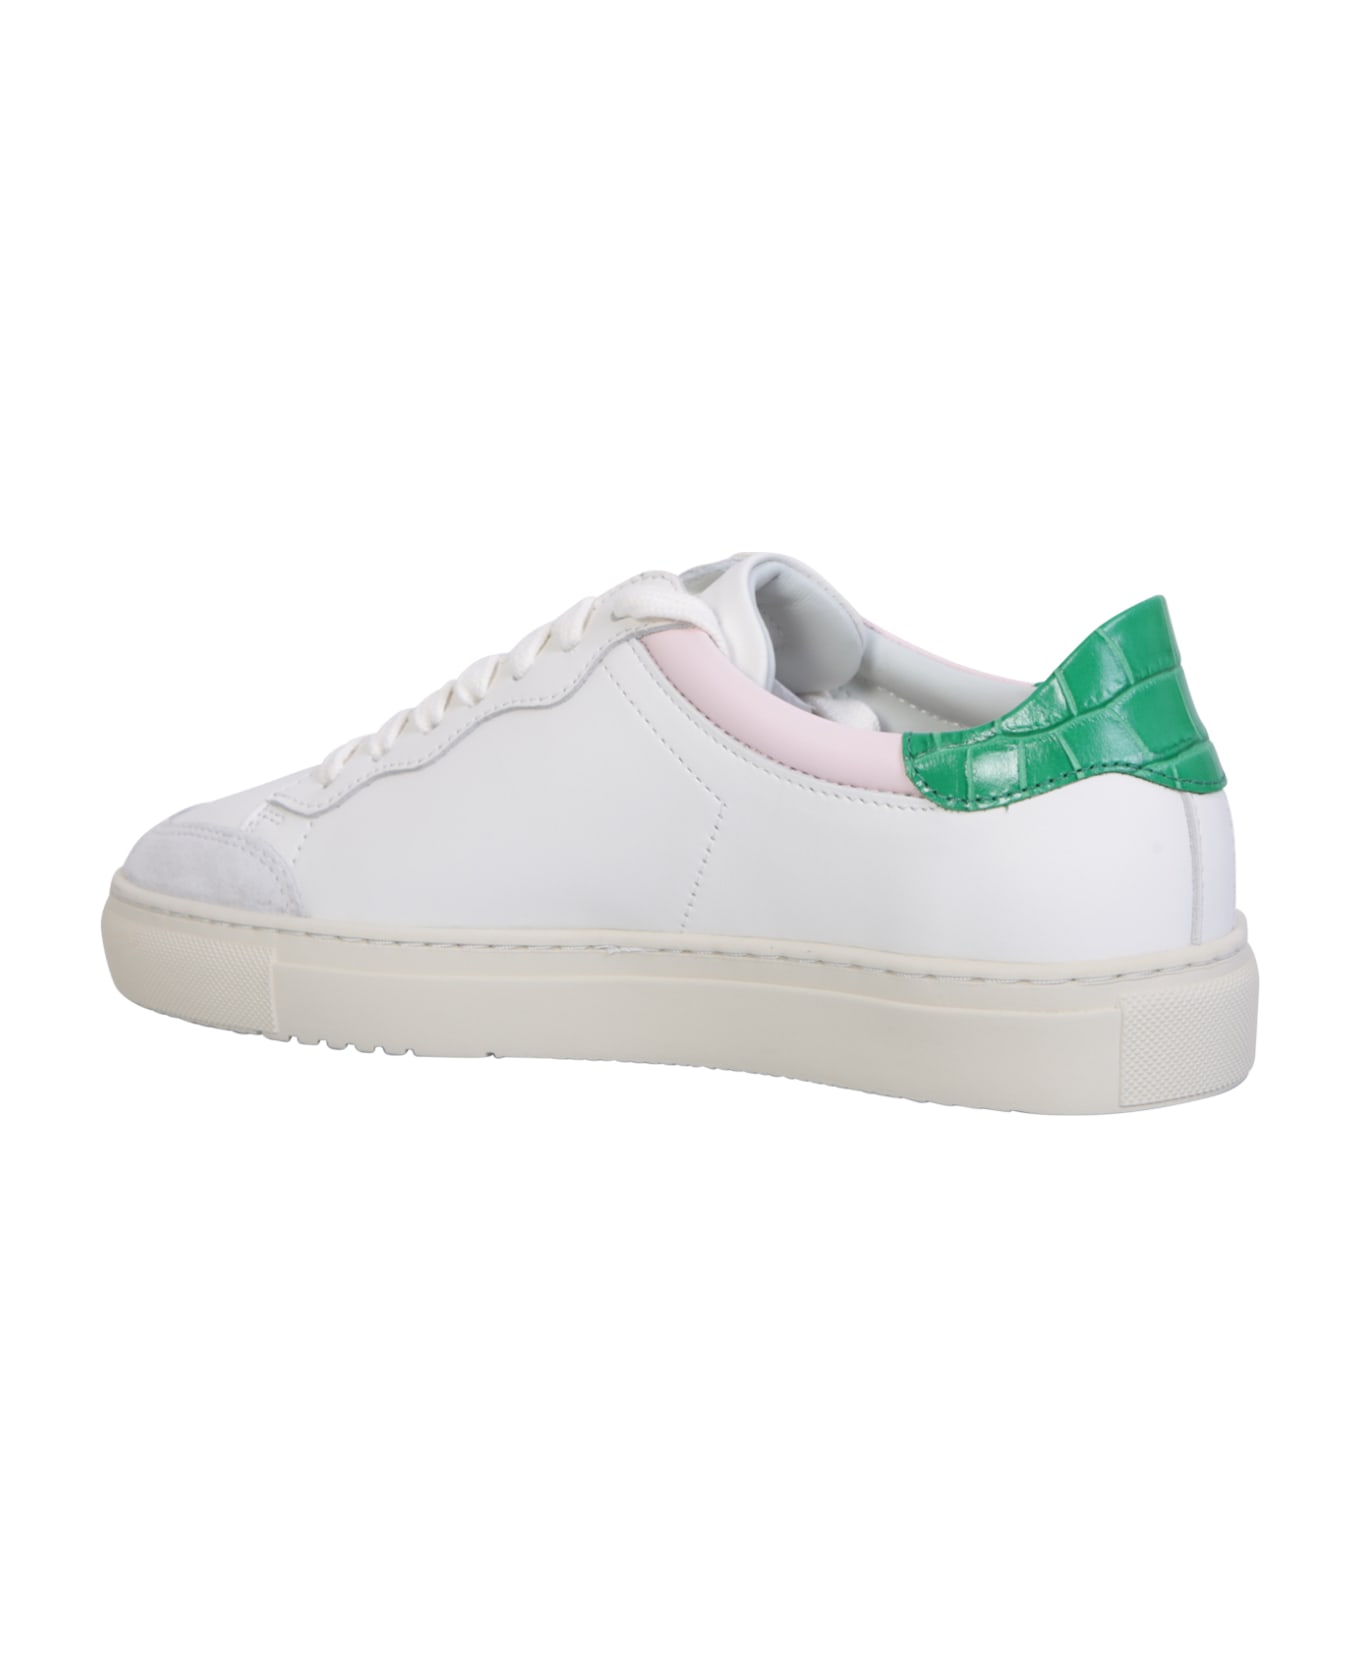 Axel Arigato Clean 180 White/ Green Sneakers - White